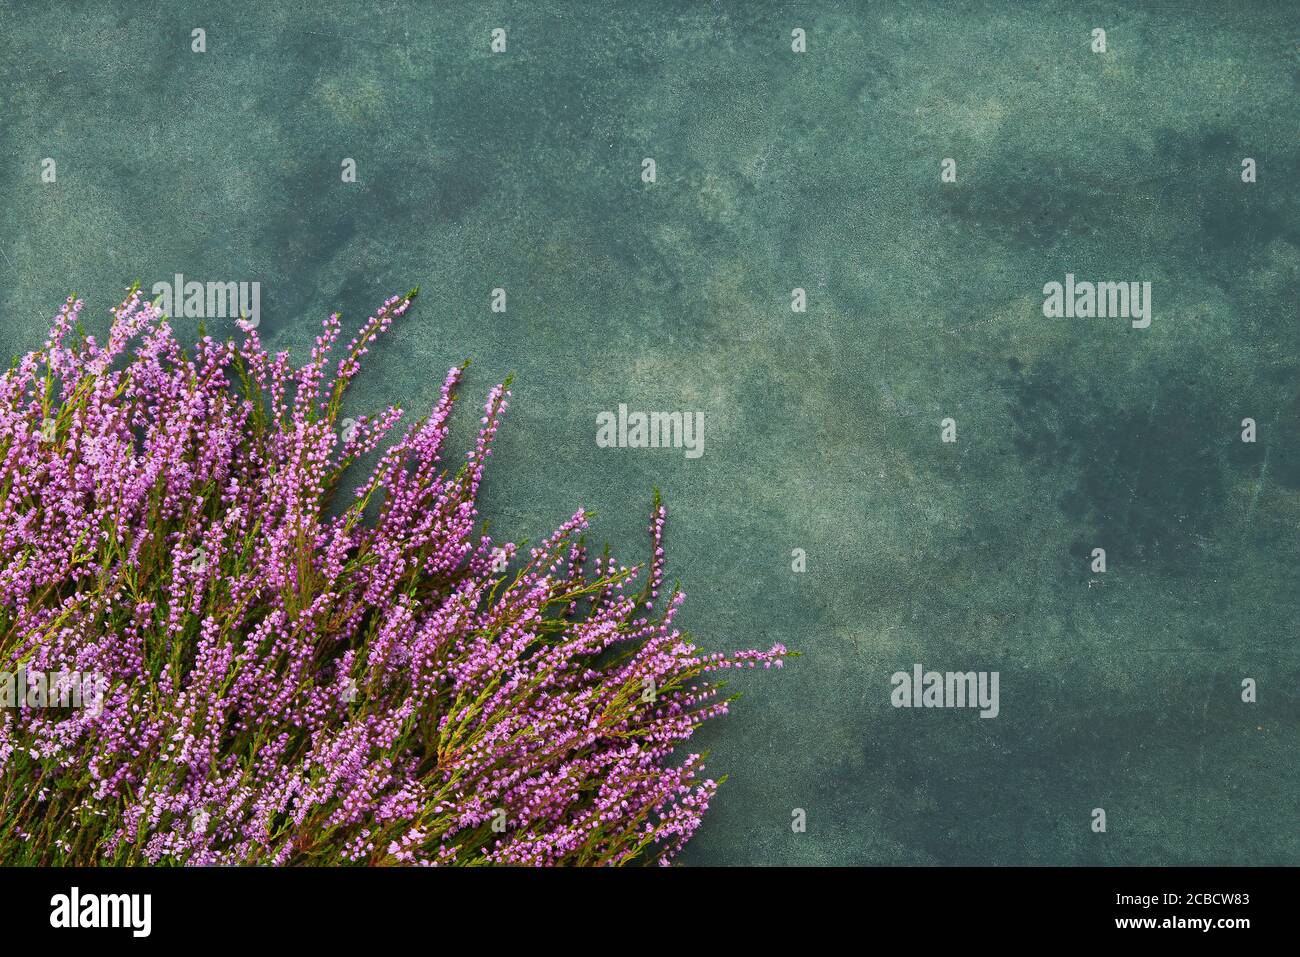 Rosa Common Heather Blumen auf grünem Hintergrund. Platz für Text kopieren, Draufsicht. Flach liegend, selektiver Fokus Stockfoto